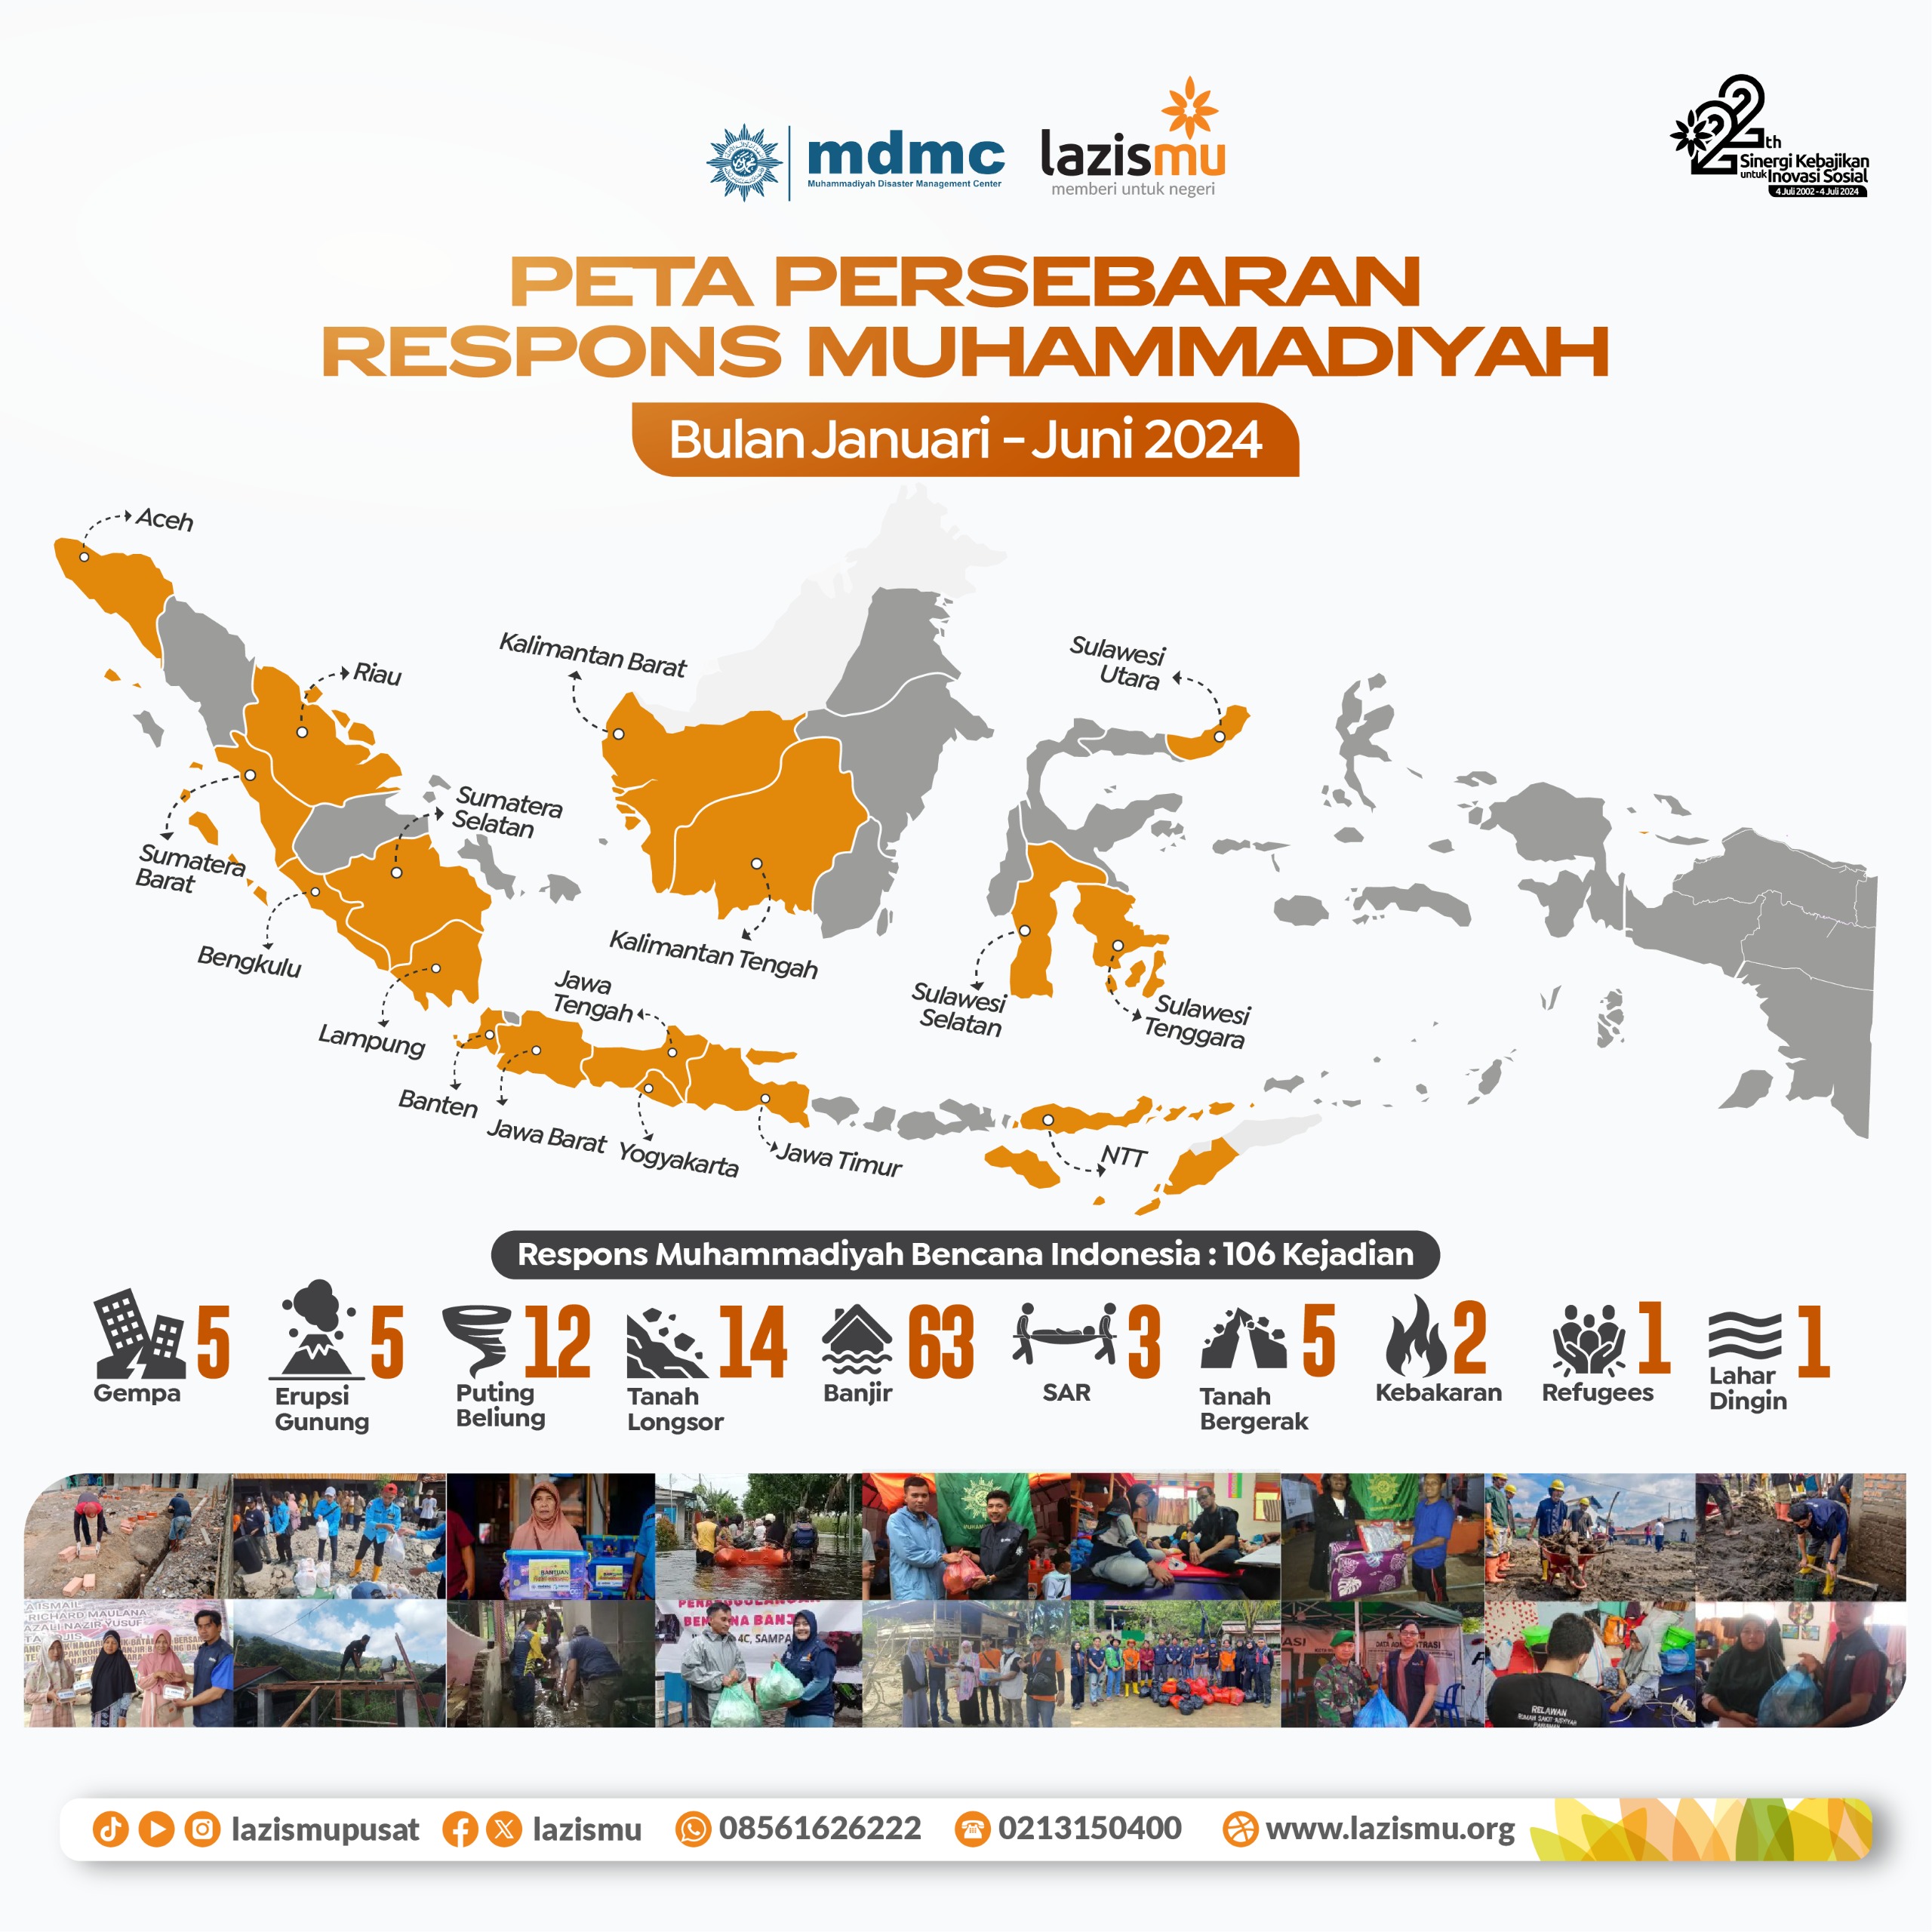 Peta Sebaran Respons Muhammadiyah melalui Lazismu dan MDMC